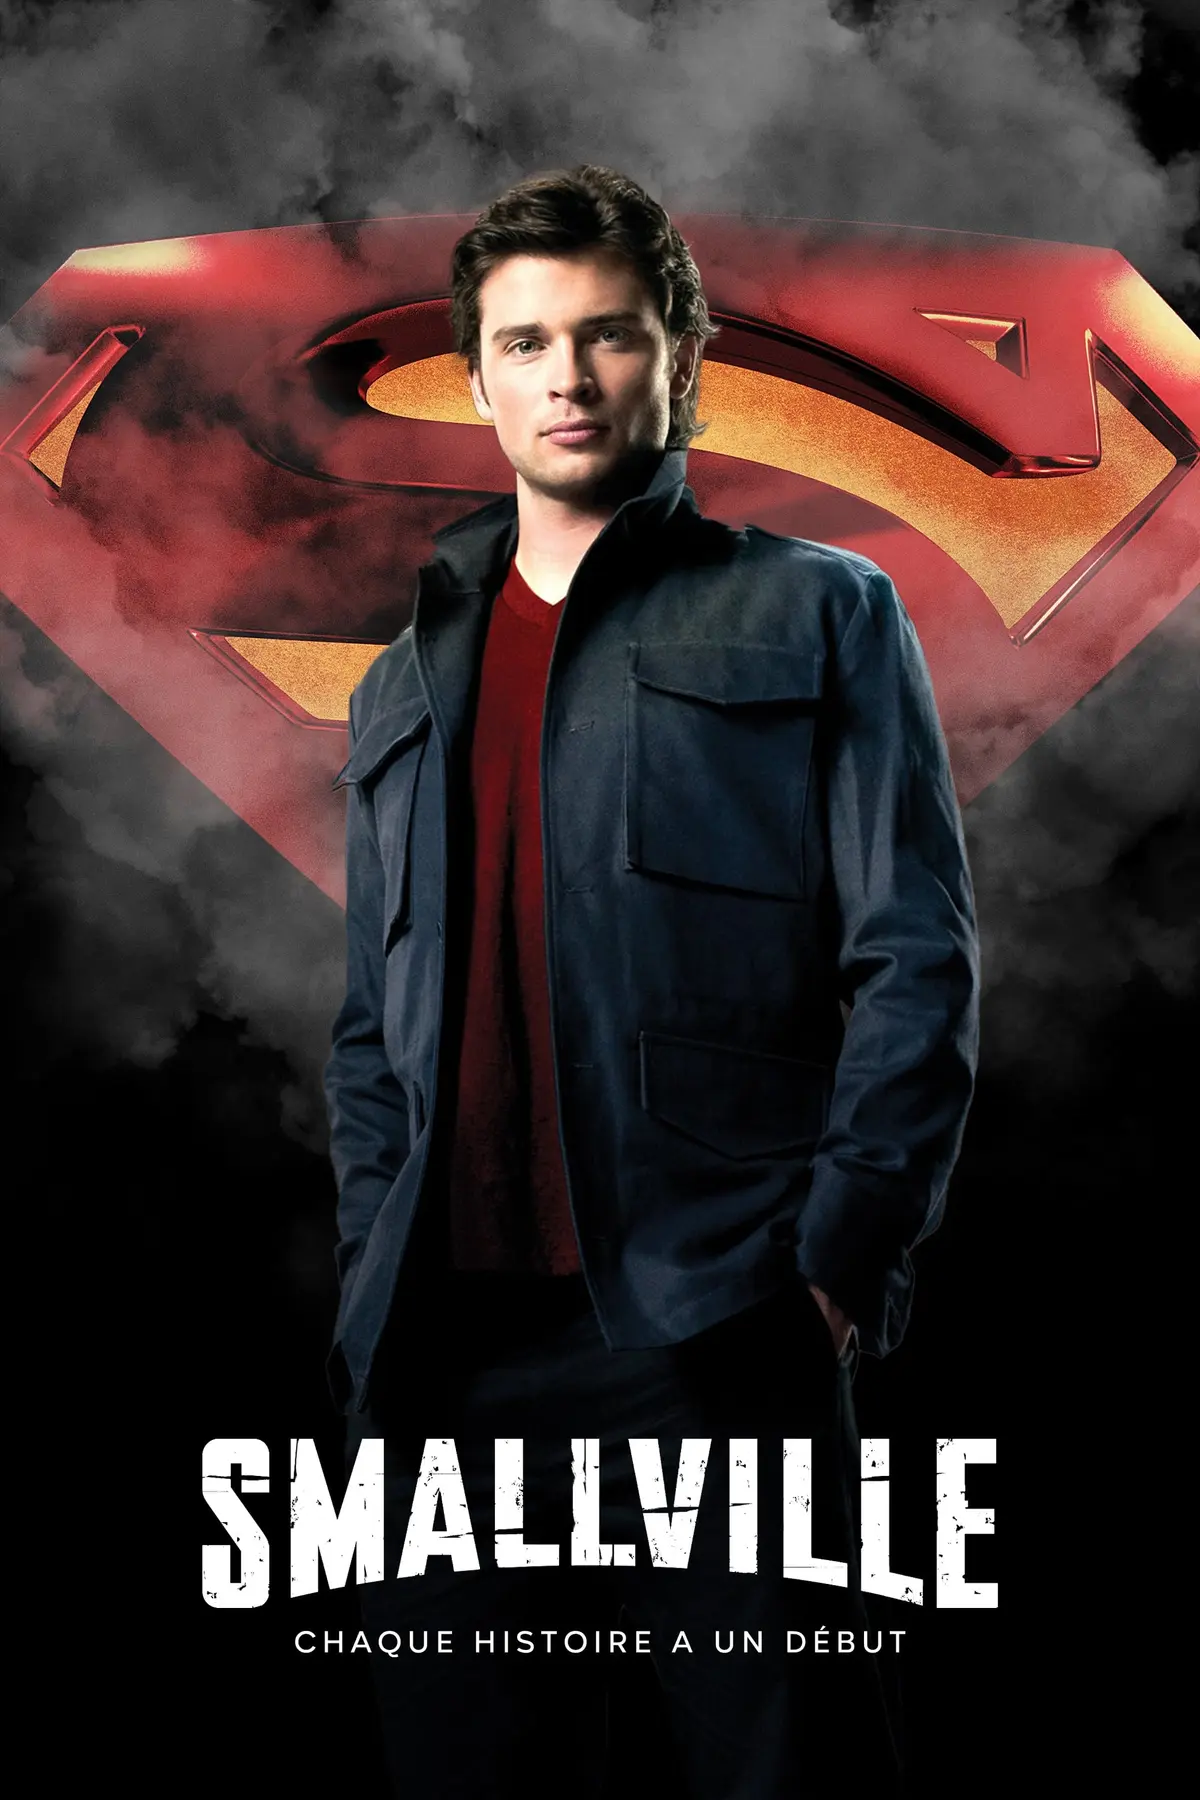 Smallville S09E16 La reine blanche